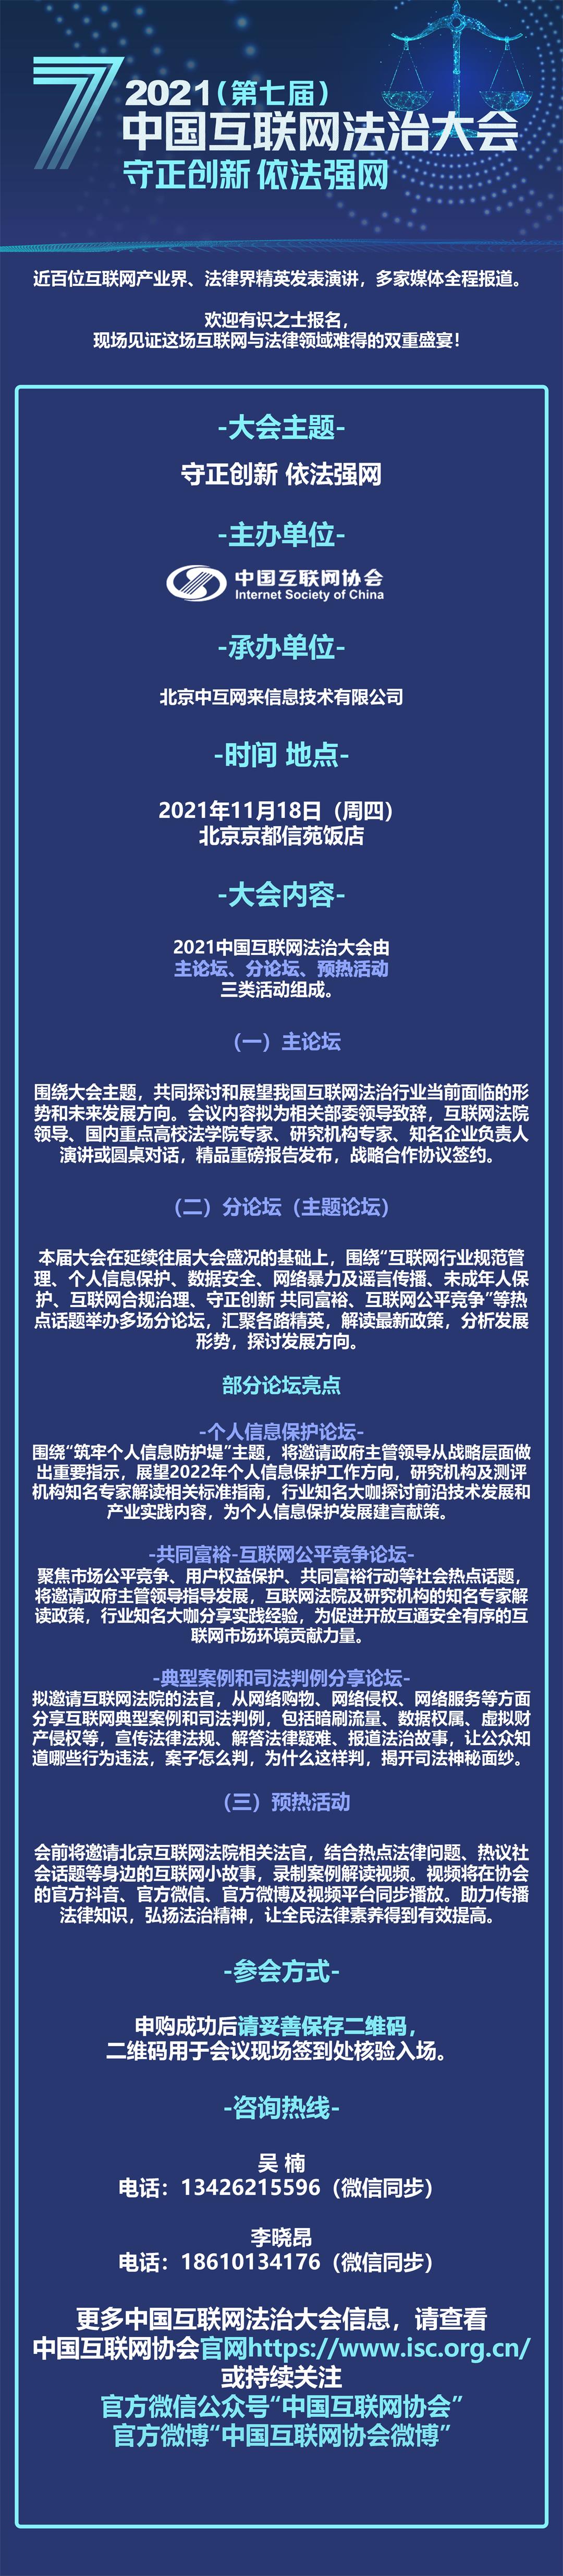 2021中国互联网法治大会 活动详情111.jpg